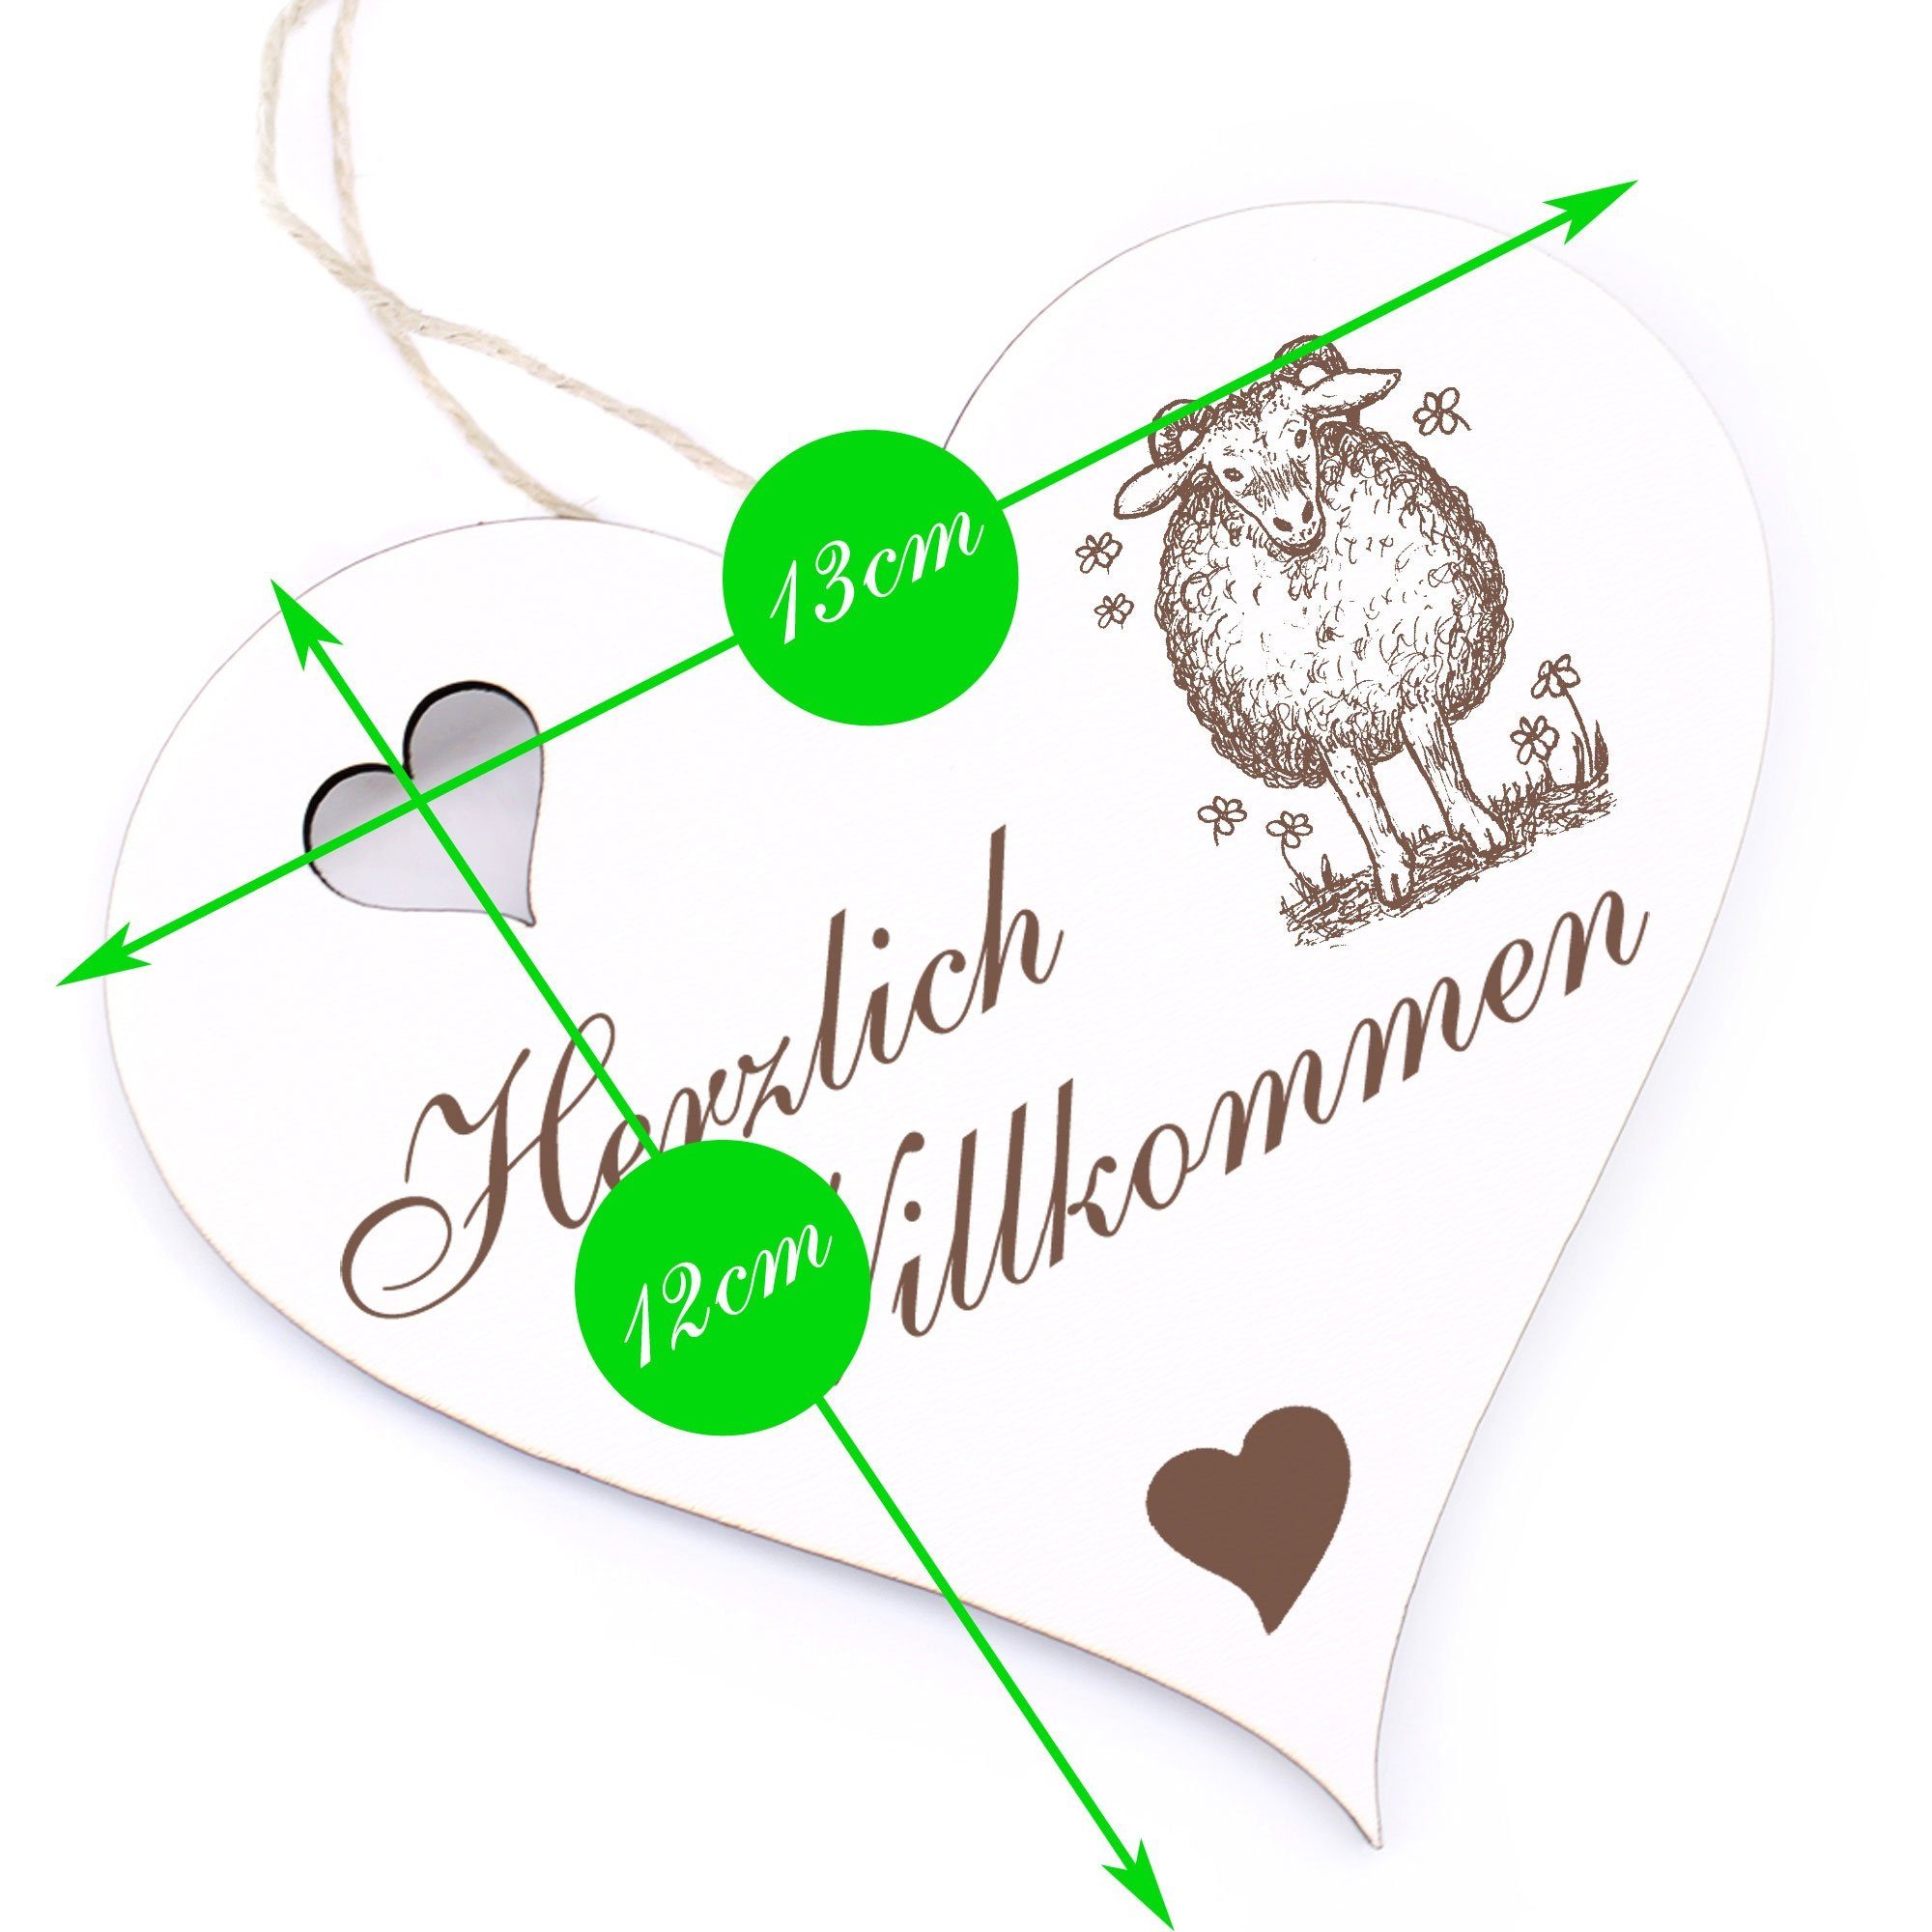 Dekolando Blume Schaf - 13x12cm Willkommen - Herzlich Hängedekoration mit